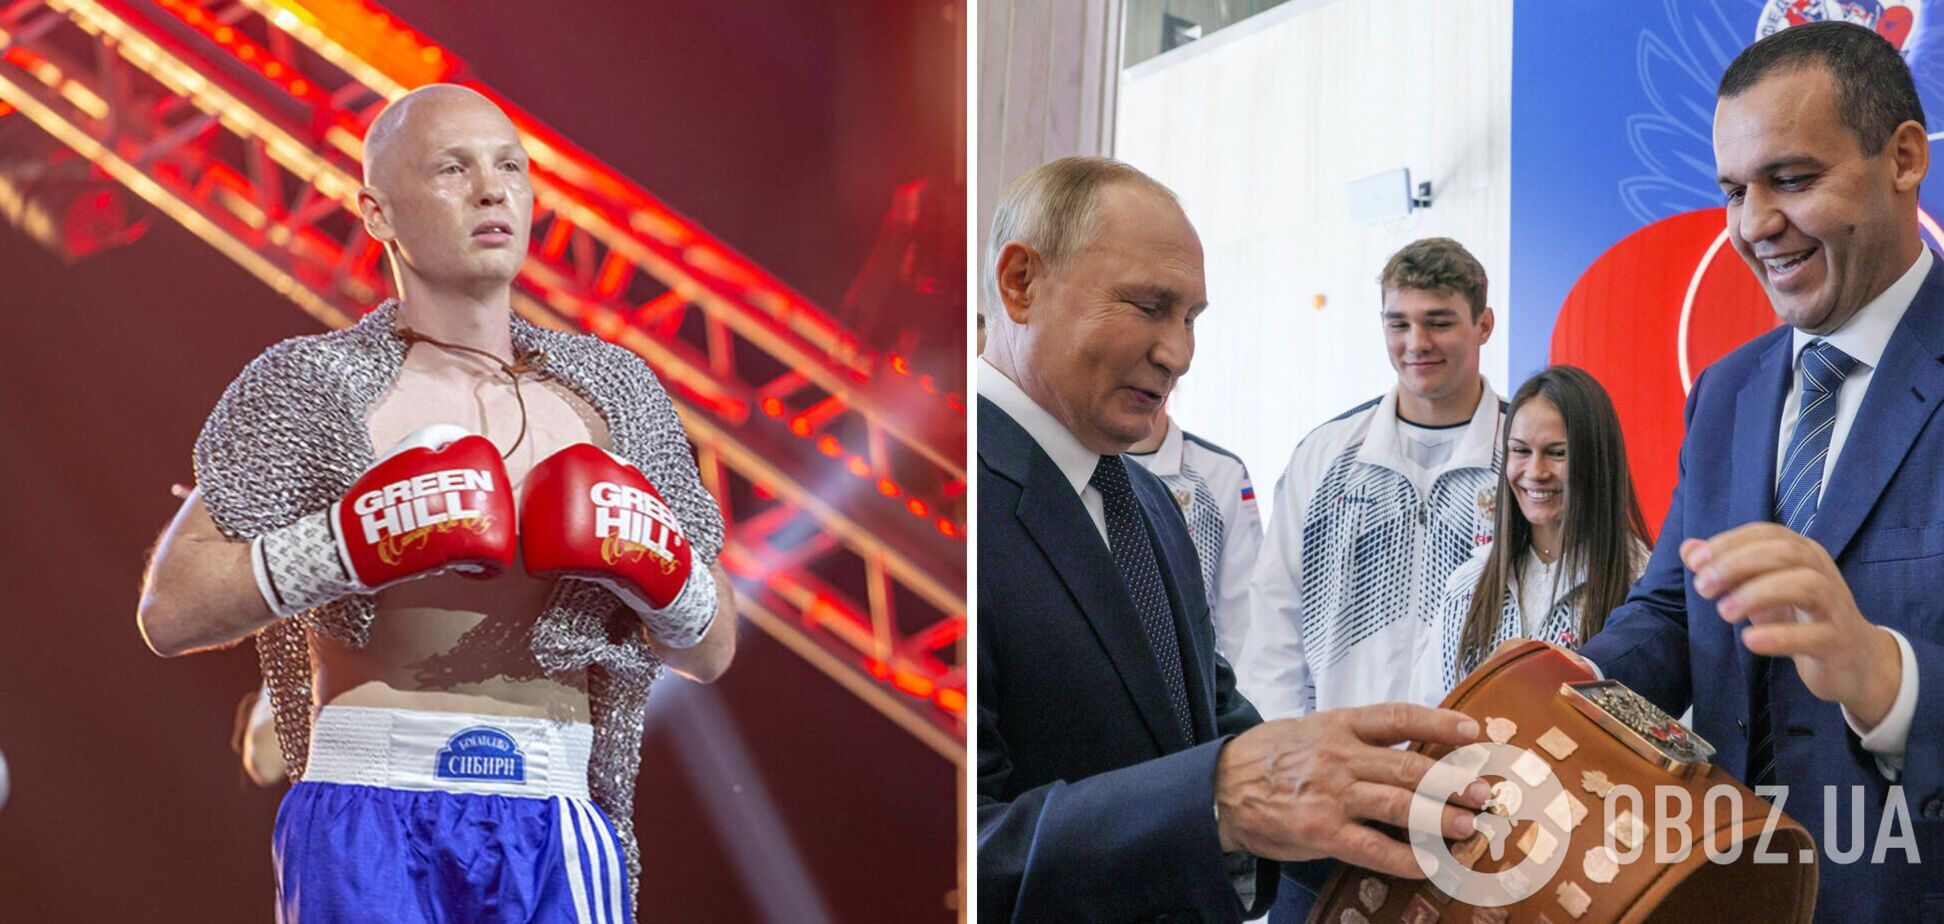 Чемпион ОИ из РФ пожаловался на 'показательную порку' после решения МОК по федерации, которая издевалась над Украиной